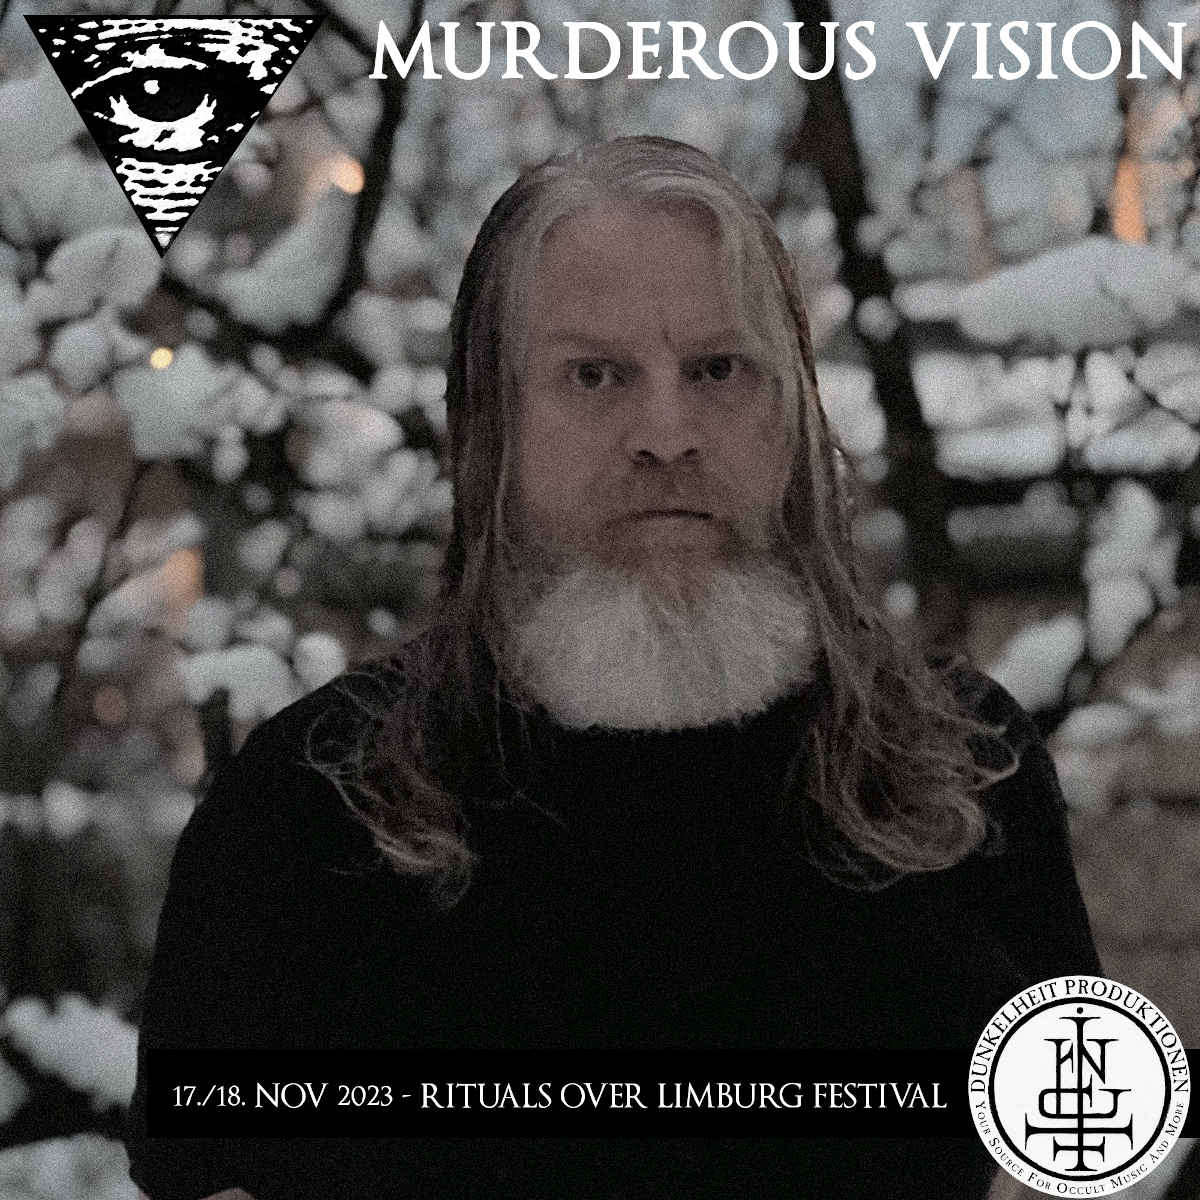 RitualsOverLimburgFest2023-band-murderousvision.jpg